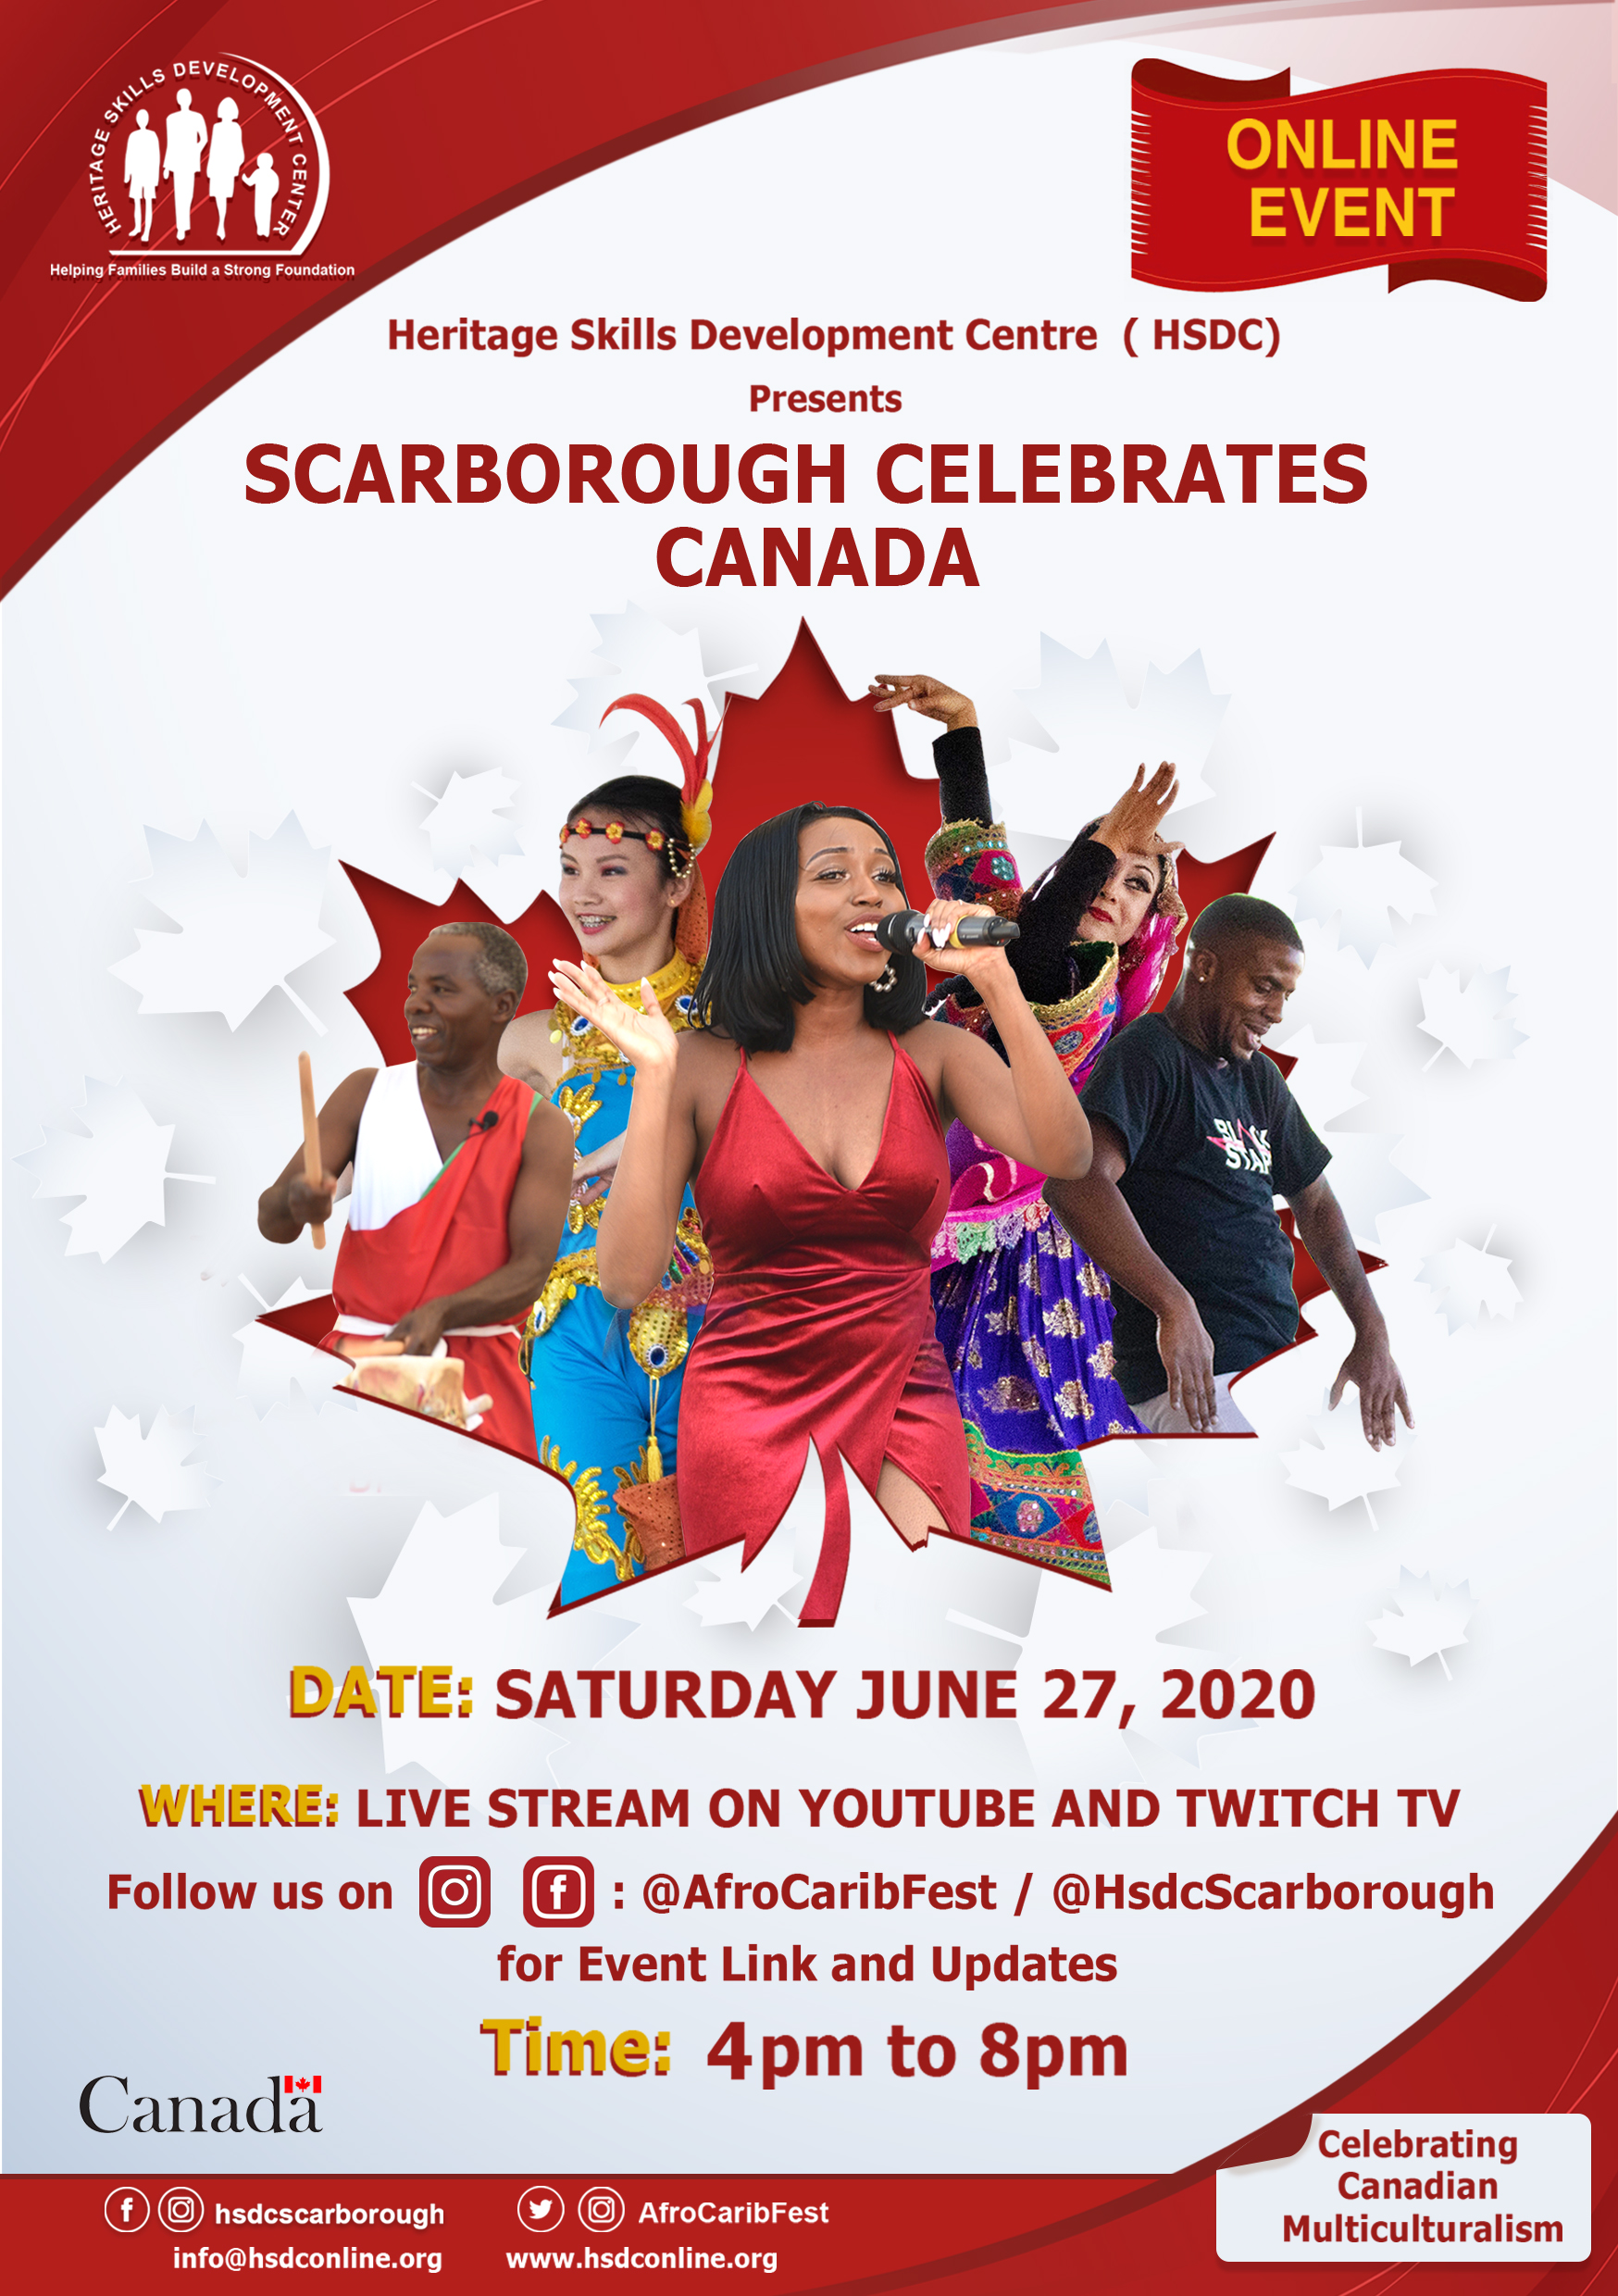 Scarborough Celebrates Canada Online Event